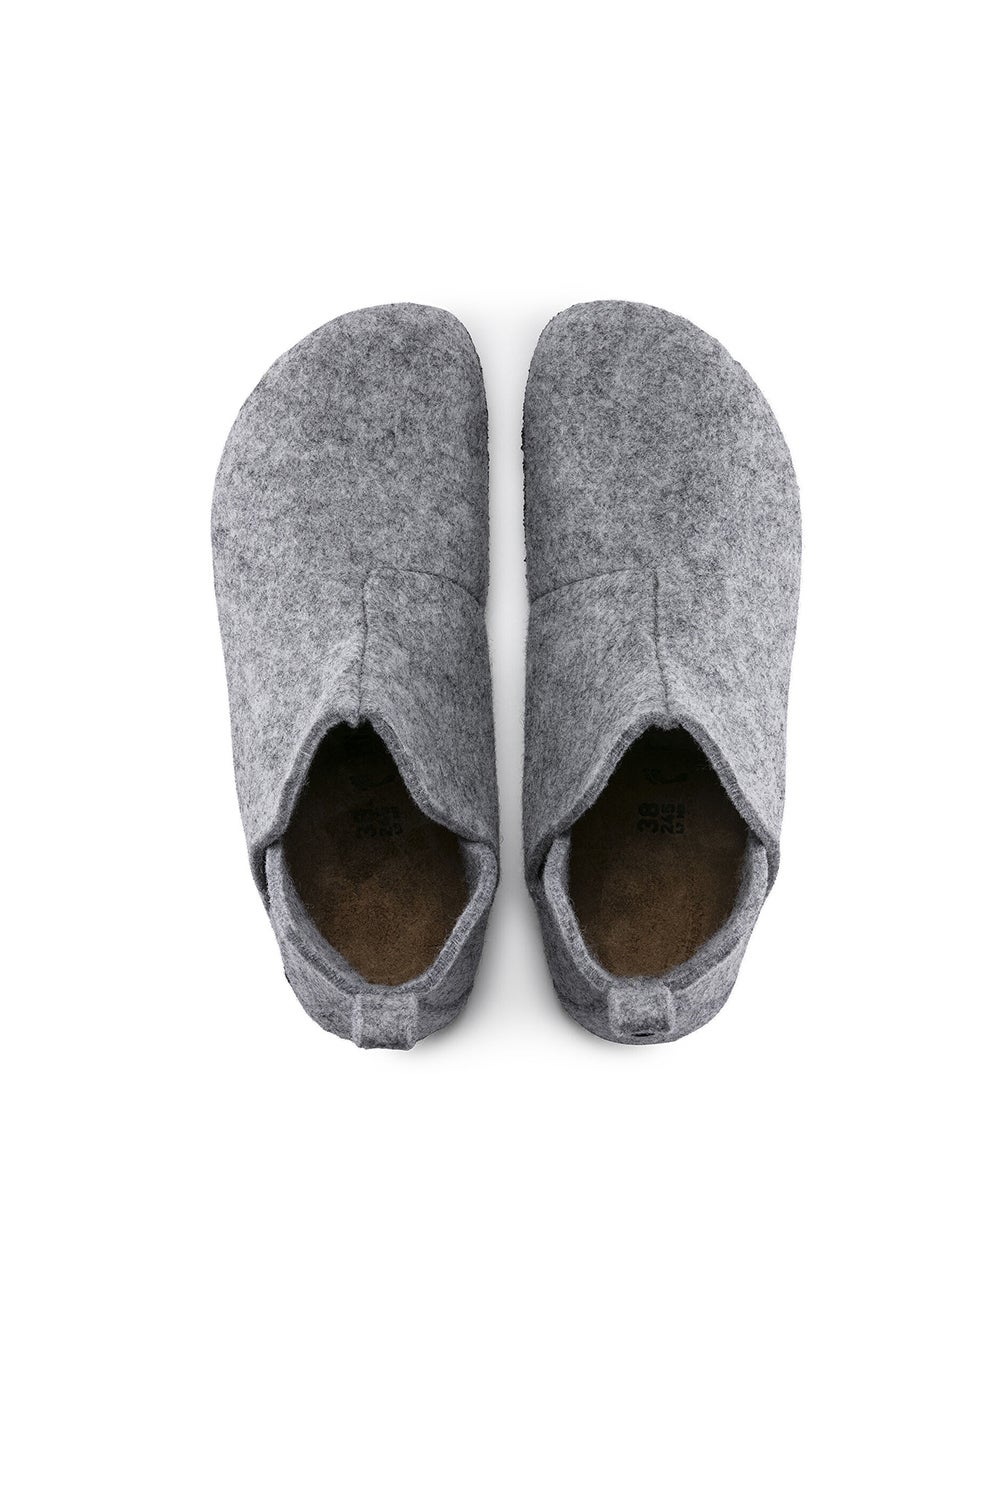 Birkenstock Andermatt Wool-Felt Narrow Fit Light Grey